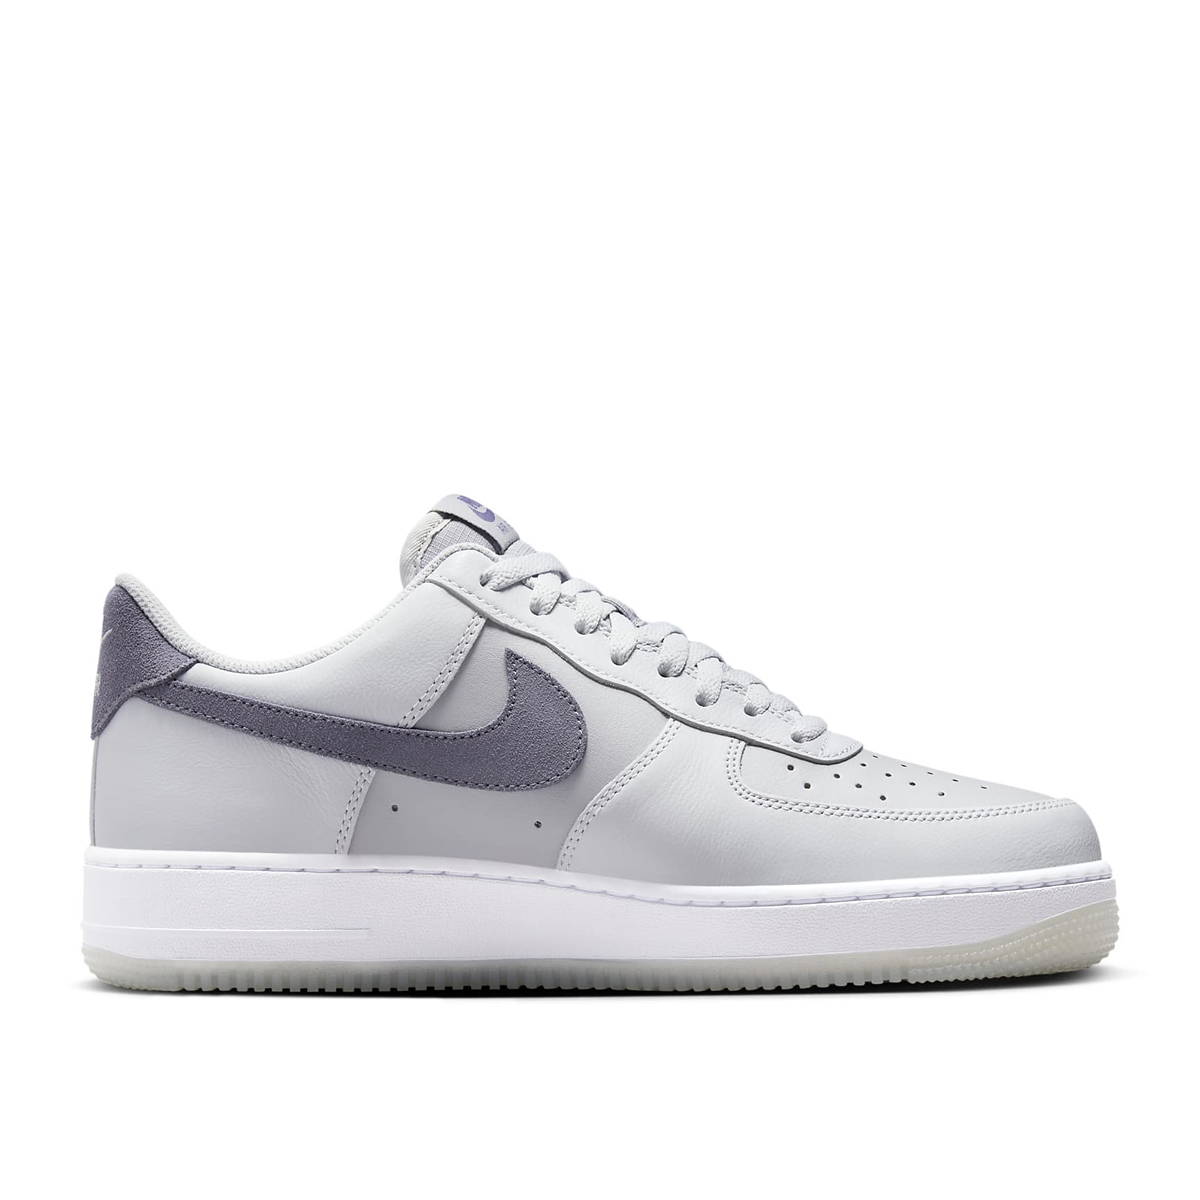 Buy Air Force 1 Low Sneakers - Grey Online in Qatar | Boutiqaat